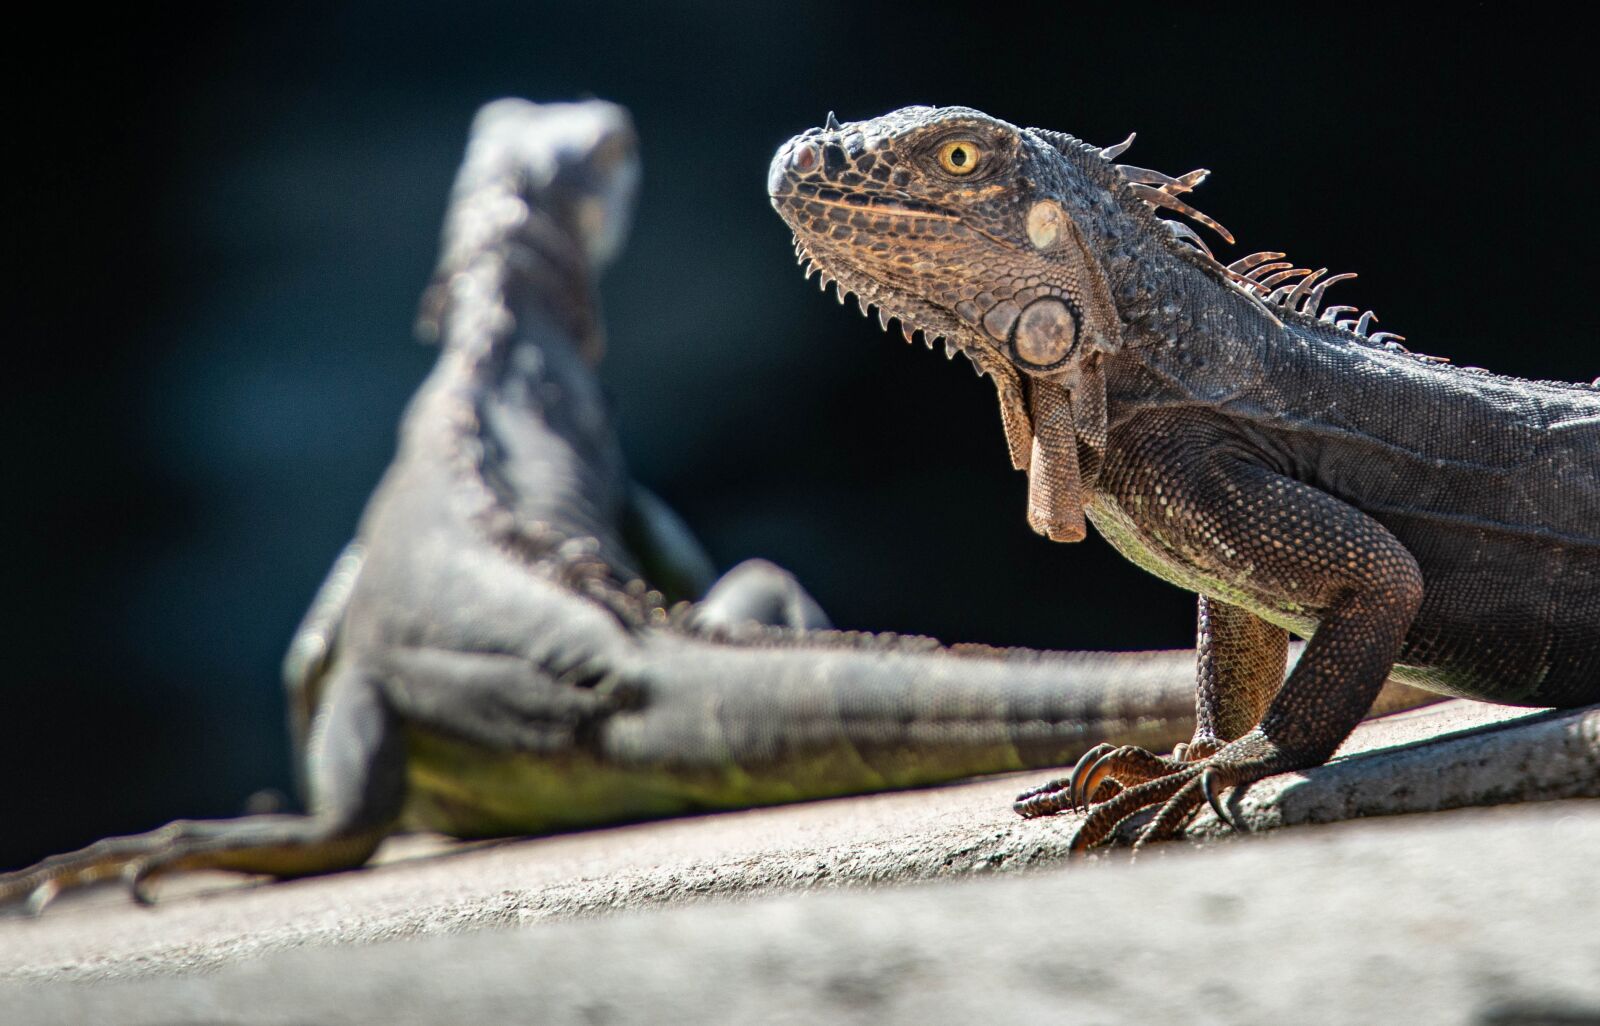 Nikon D800 sample photo. Iguanas, reptiles, lizard photography